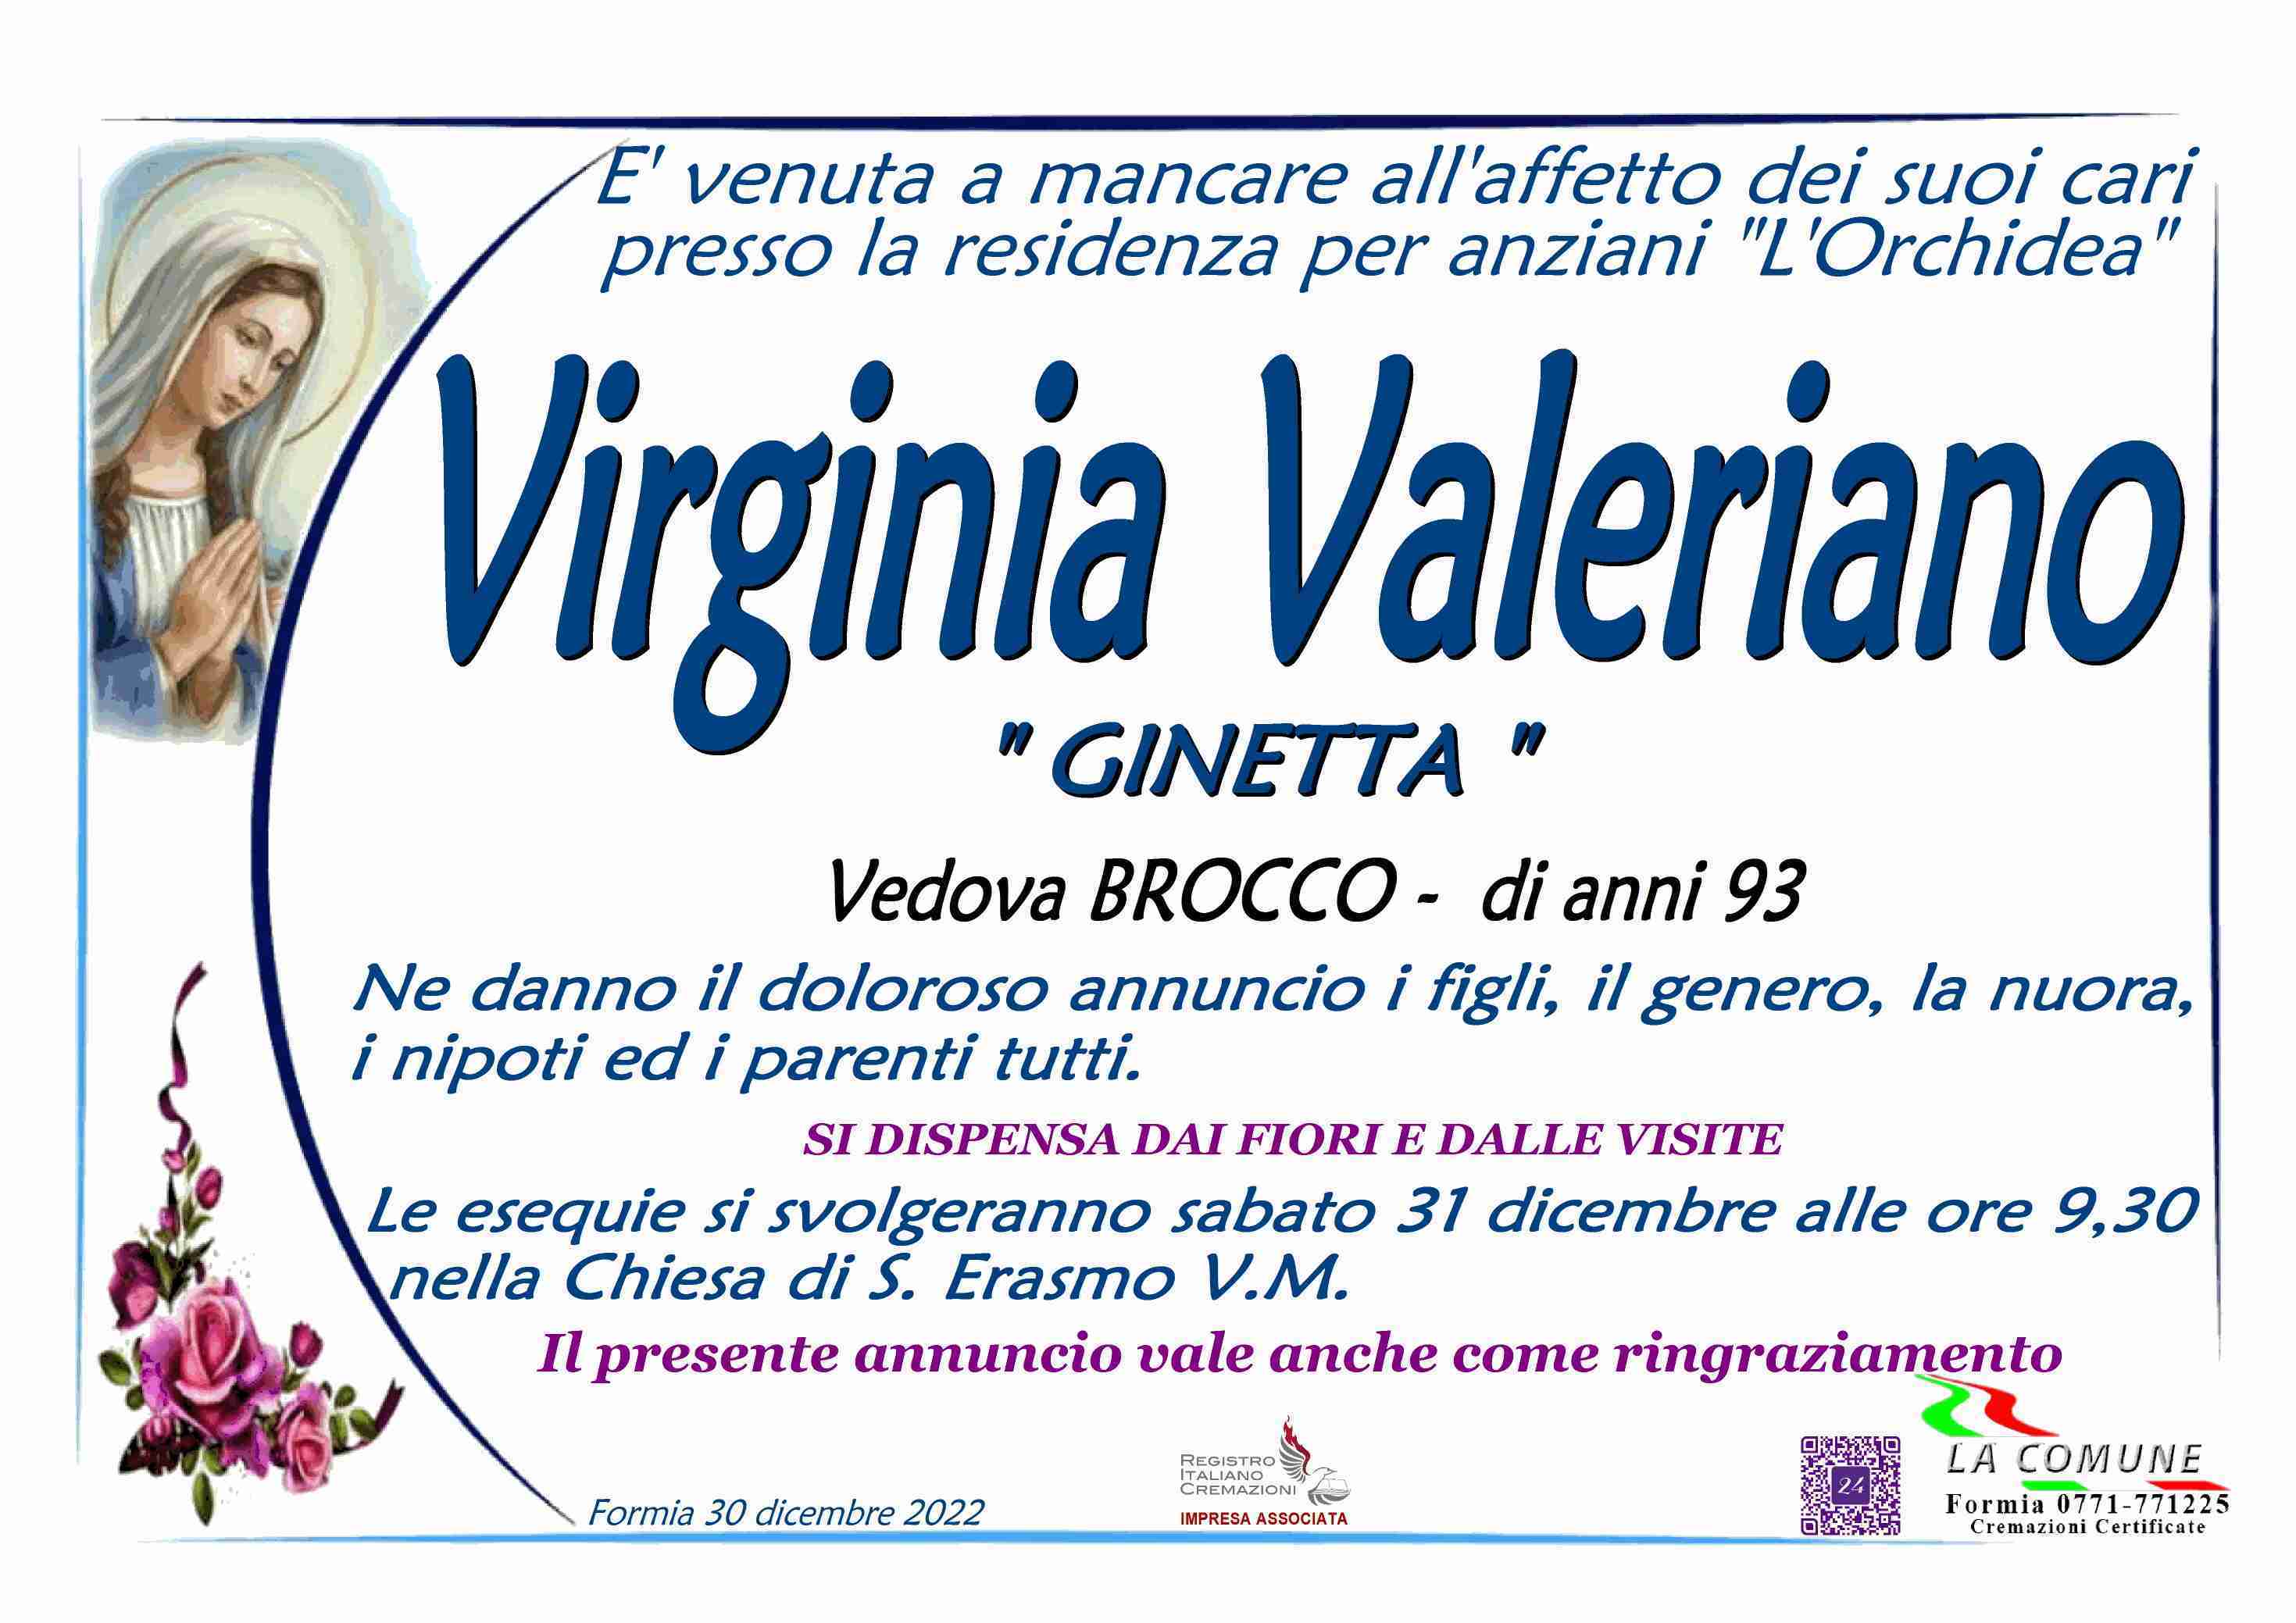 Virginia Valeriano